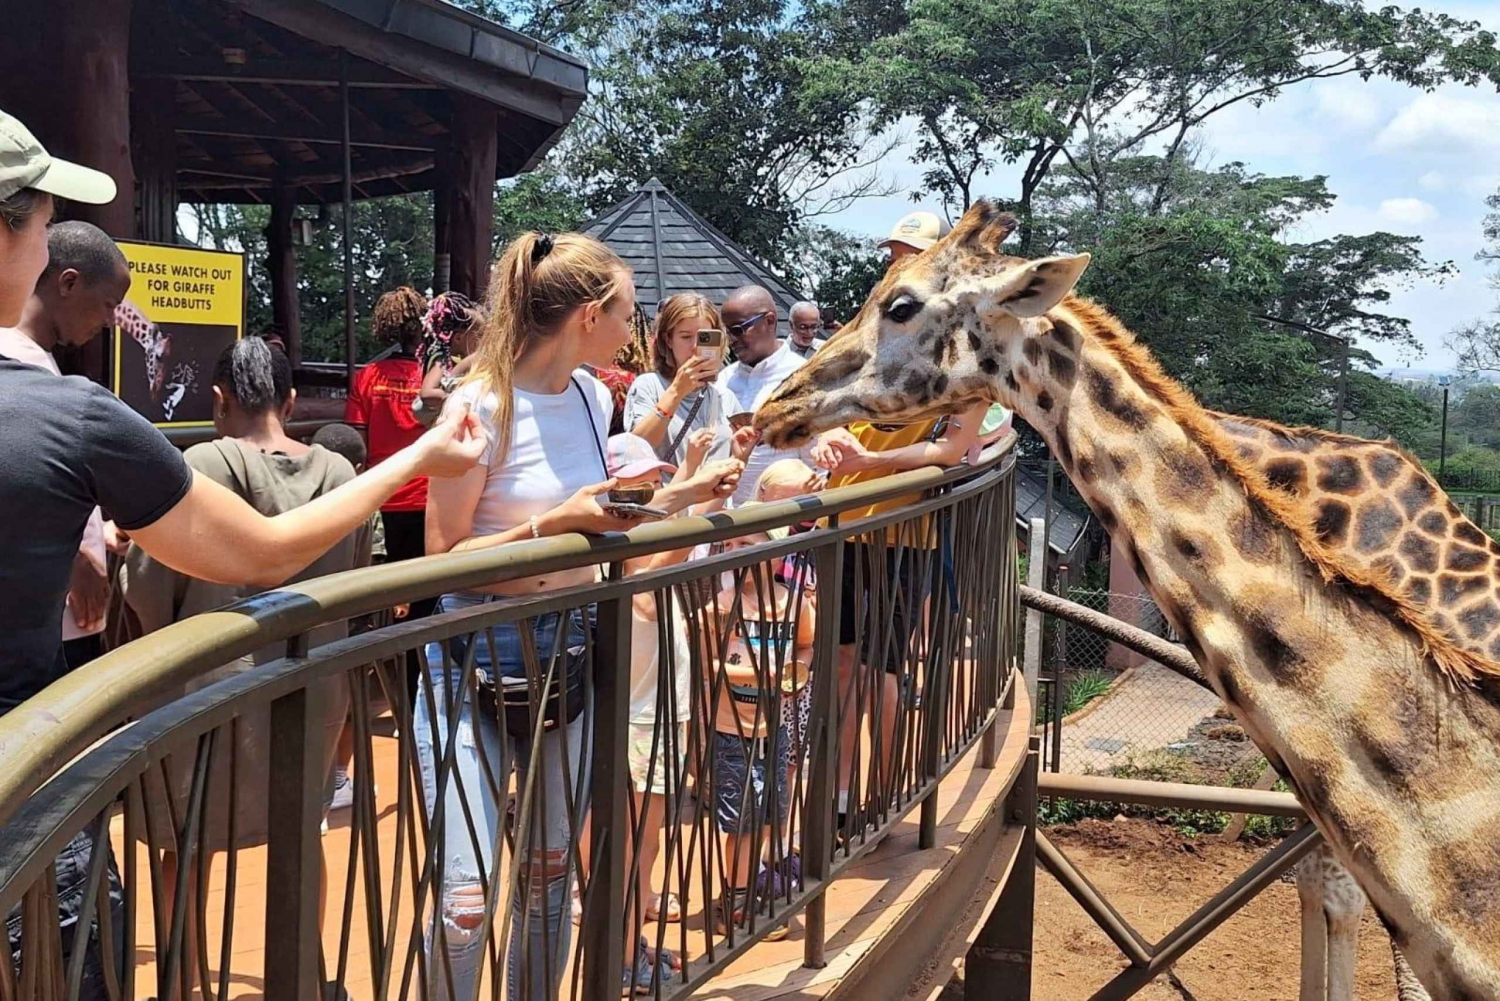 Nairobi: Giraffe Center and Karen Blixen Museum Tour